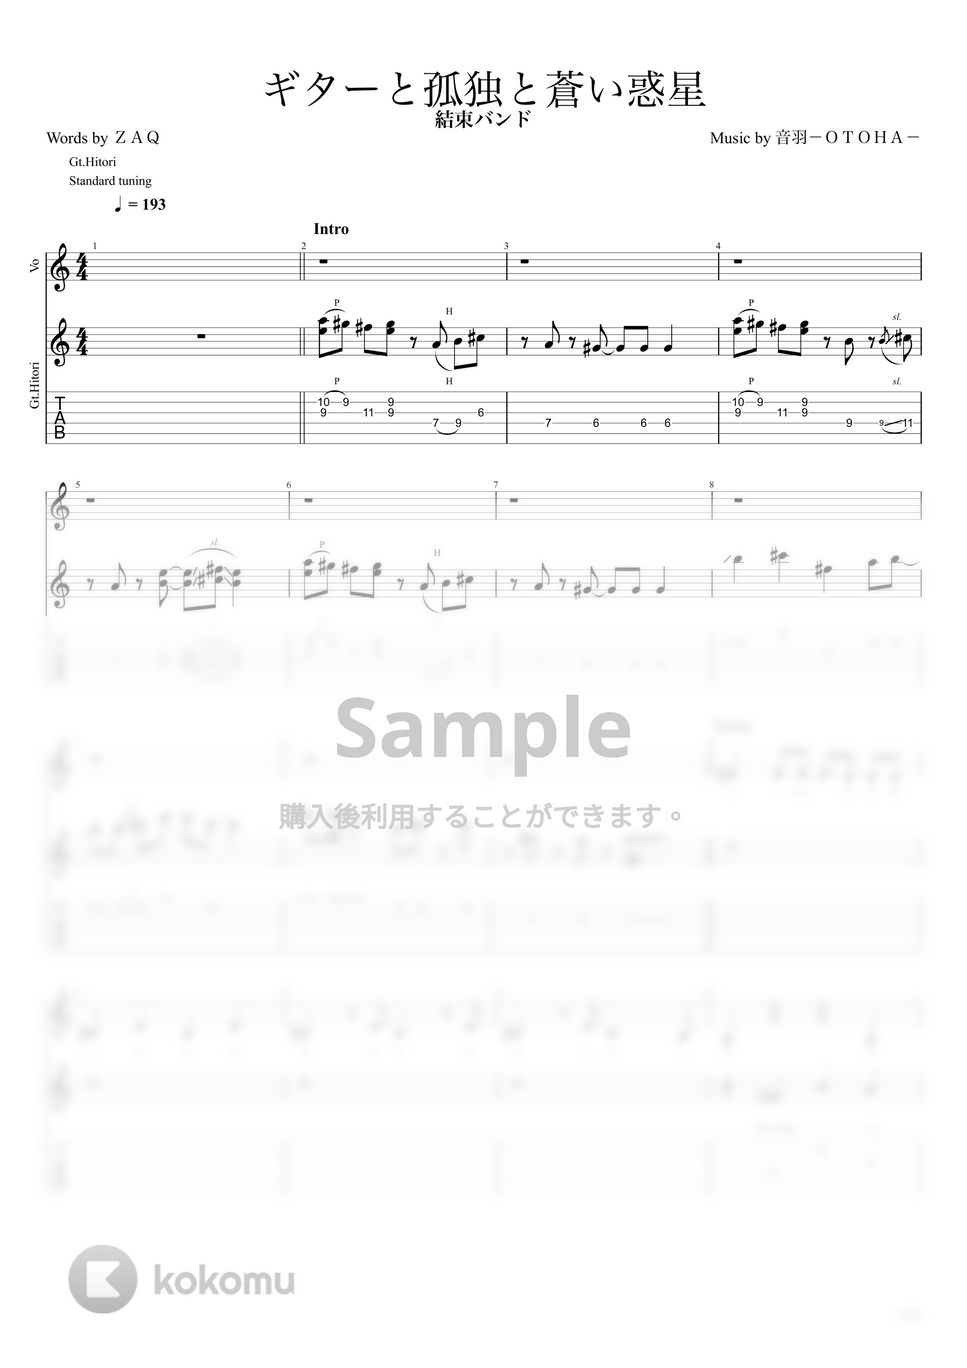 結束バンド - ギターと孤独と蒼い惑星 (Full Ver./Gt.後藤ひとり) by キリギリス